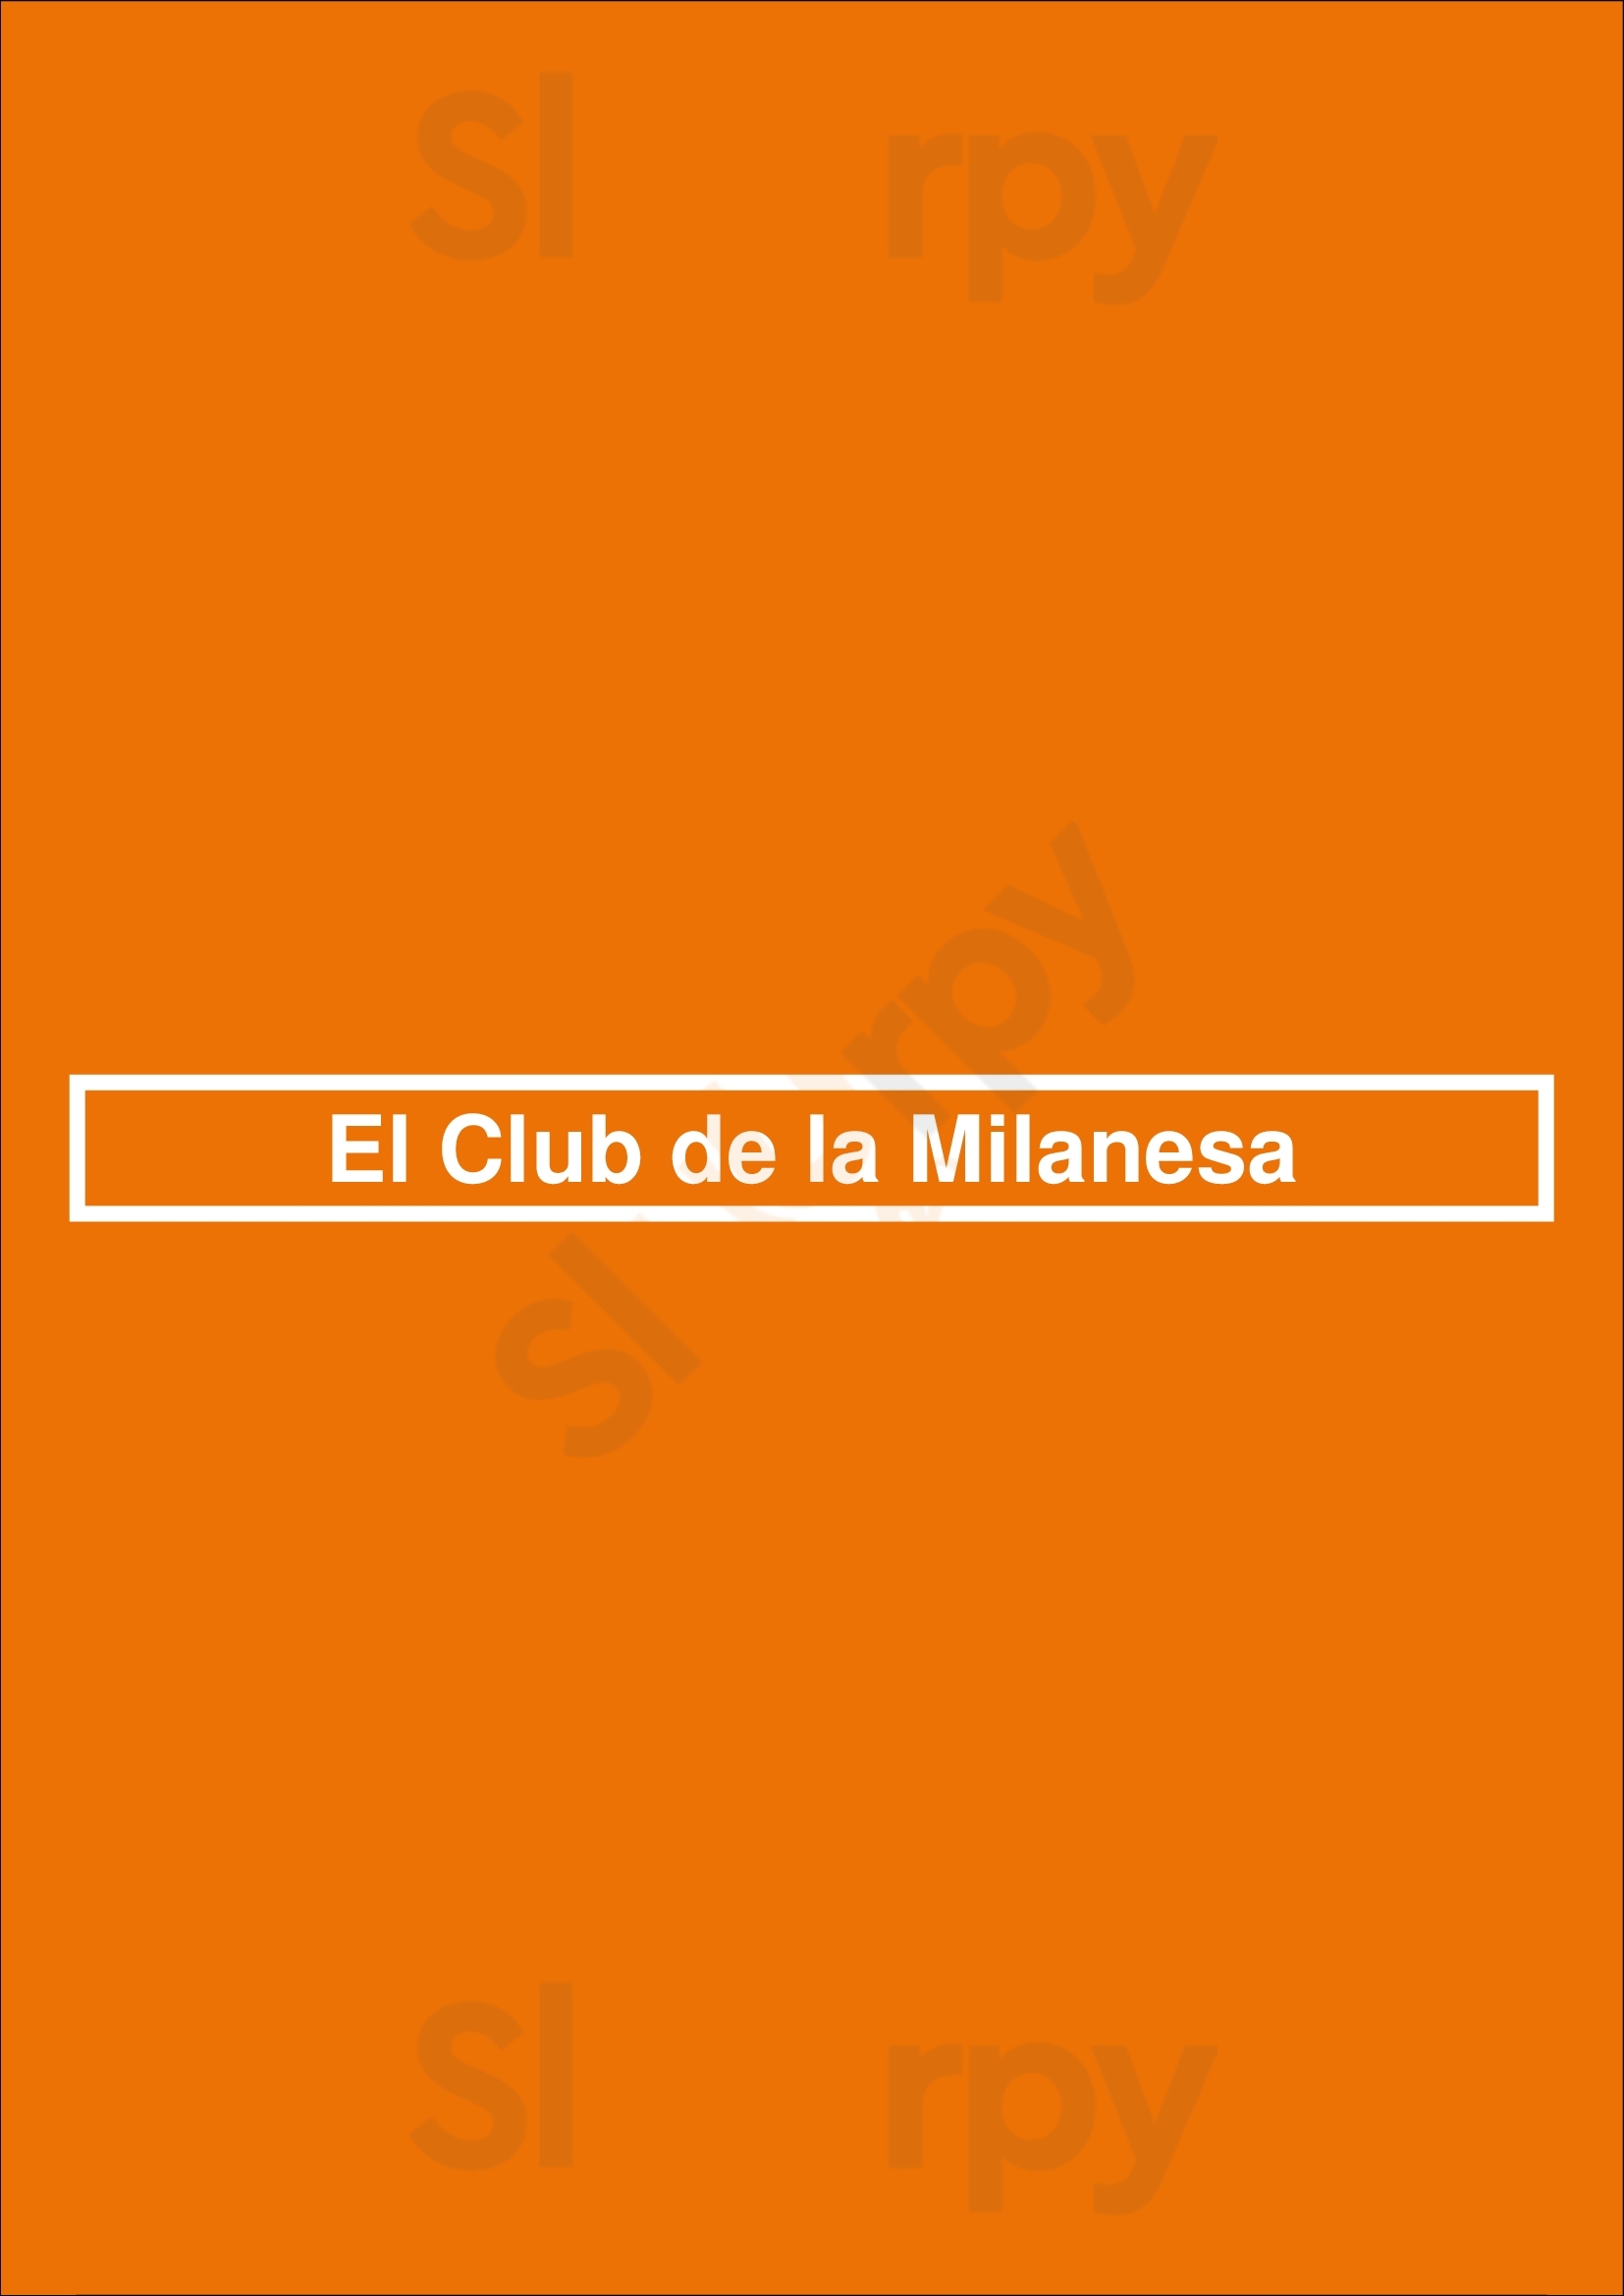 El Club De La Milanesa San Isidro Menu - 1